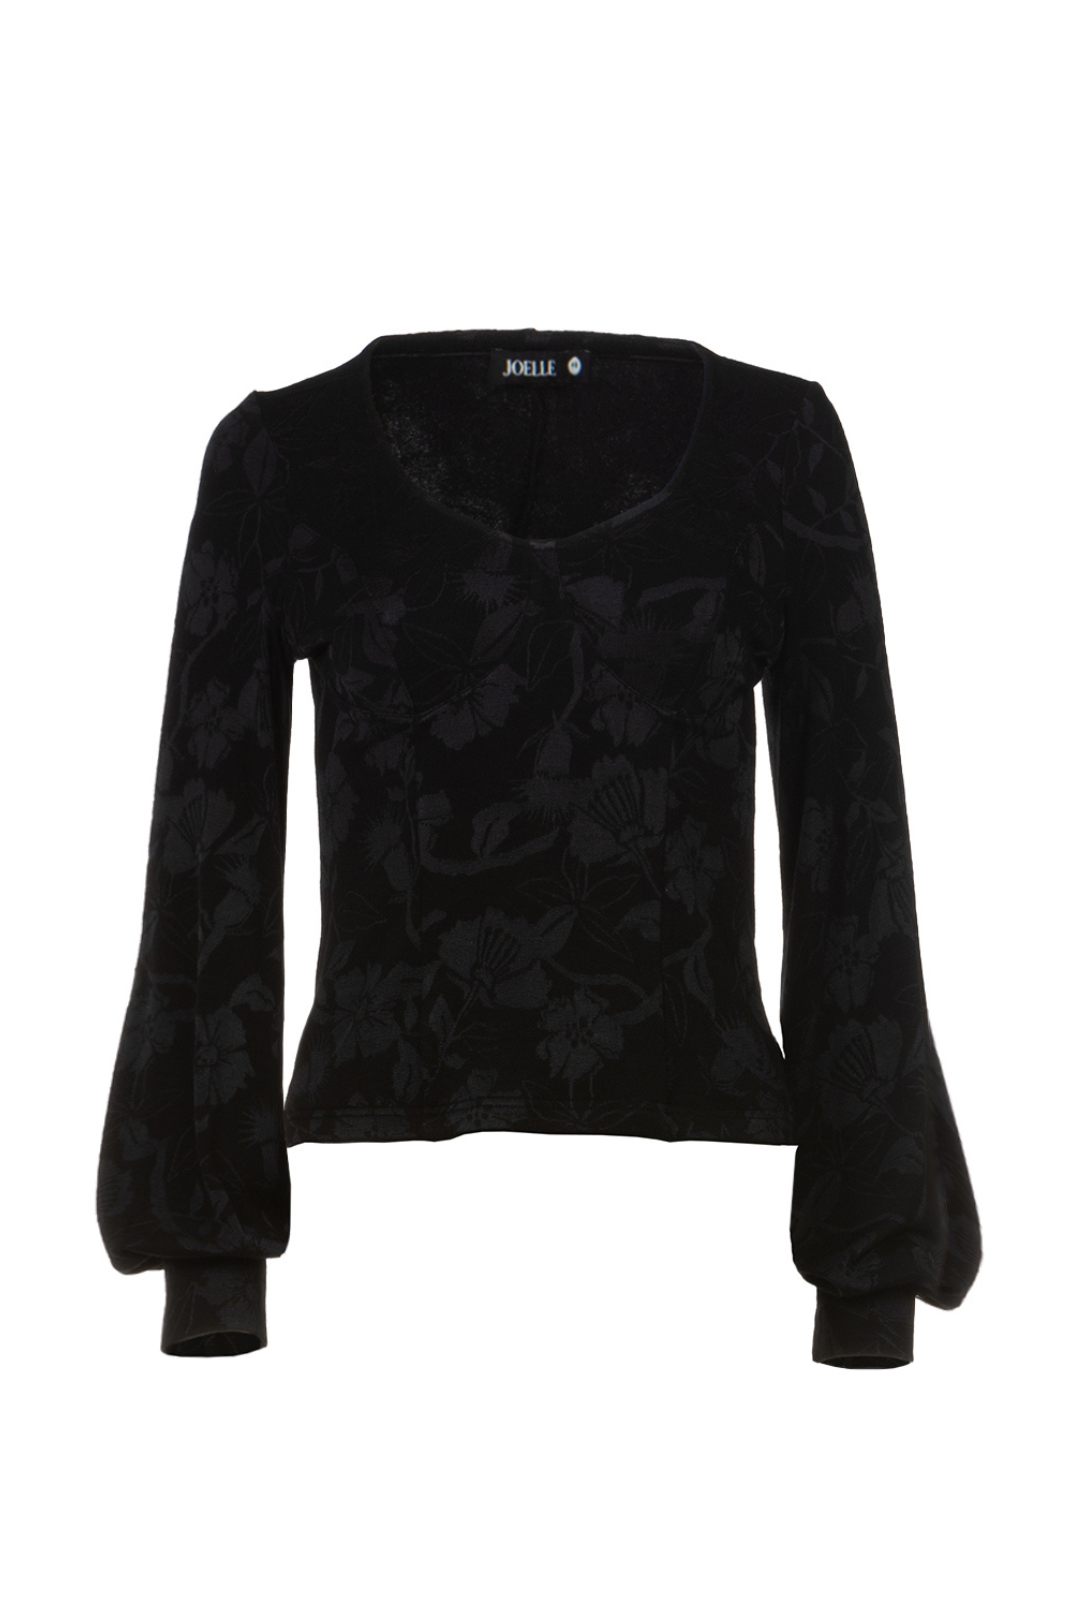 Chandail corset noir à motifs floraux | Sandy